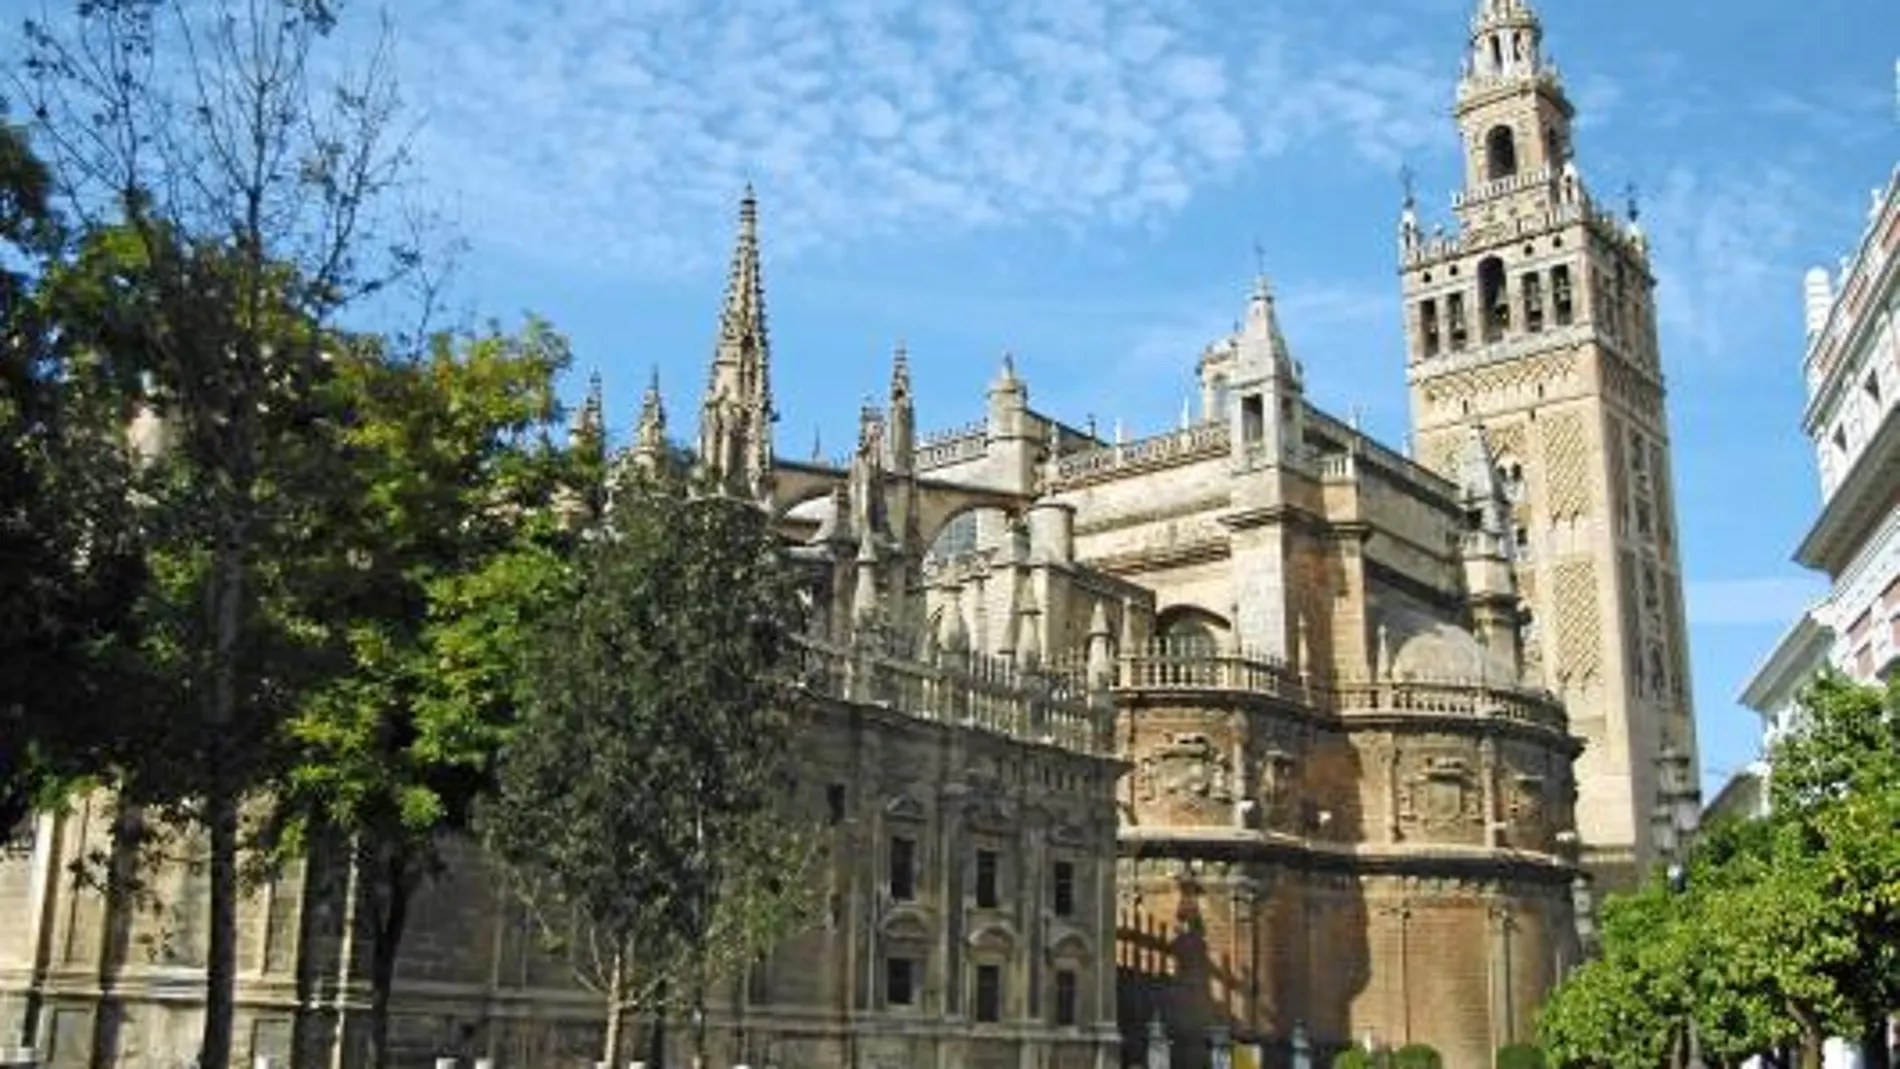 La Catedral de Sevilla, el Archivo de Indias y el Alcázar pasan a ser bienes de Valor Universal Excepcional, según la Unesco